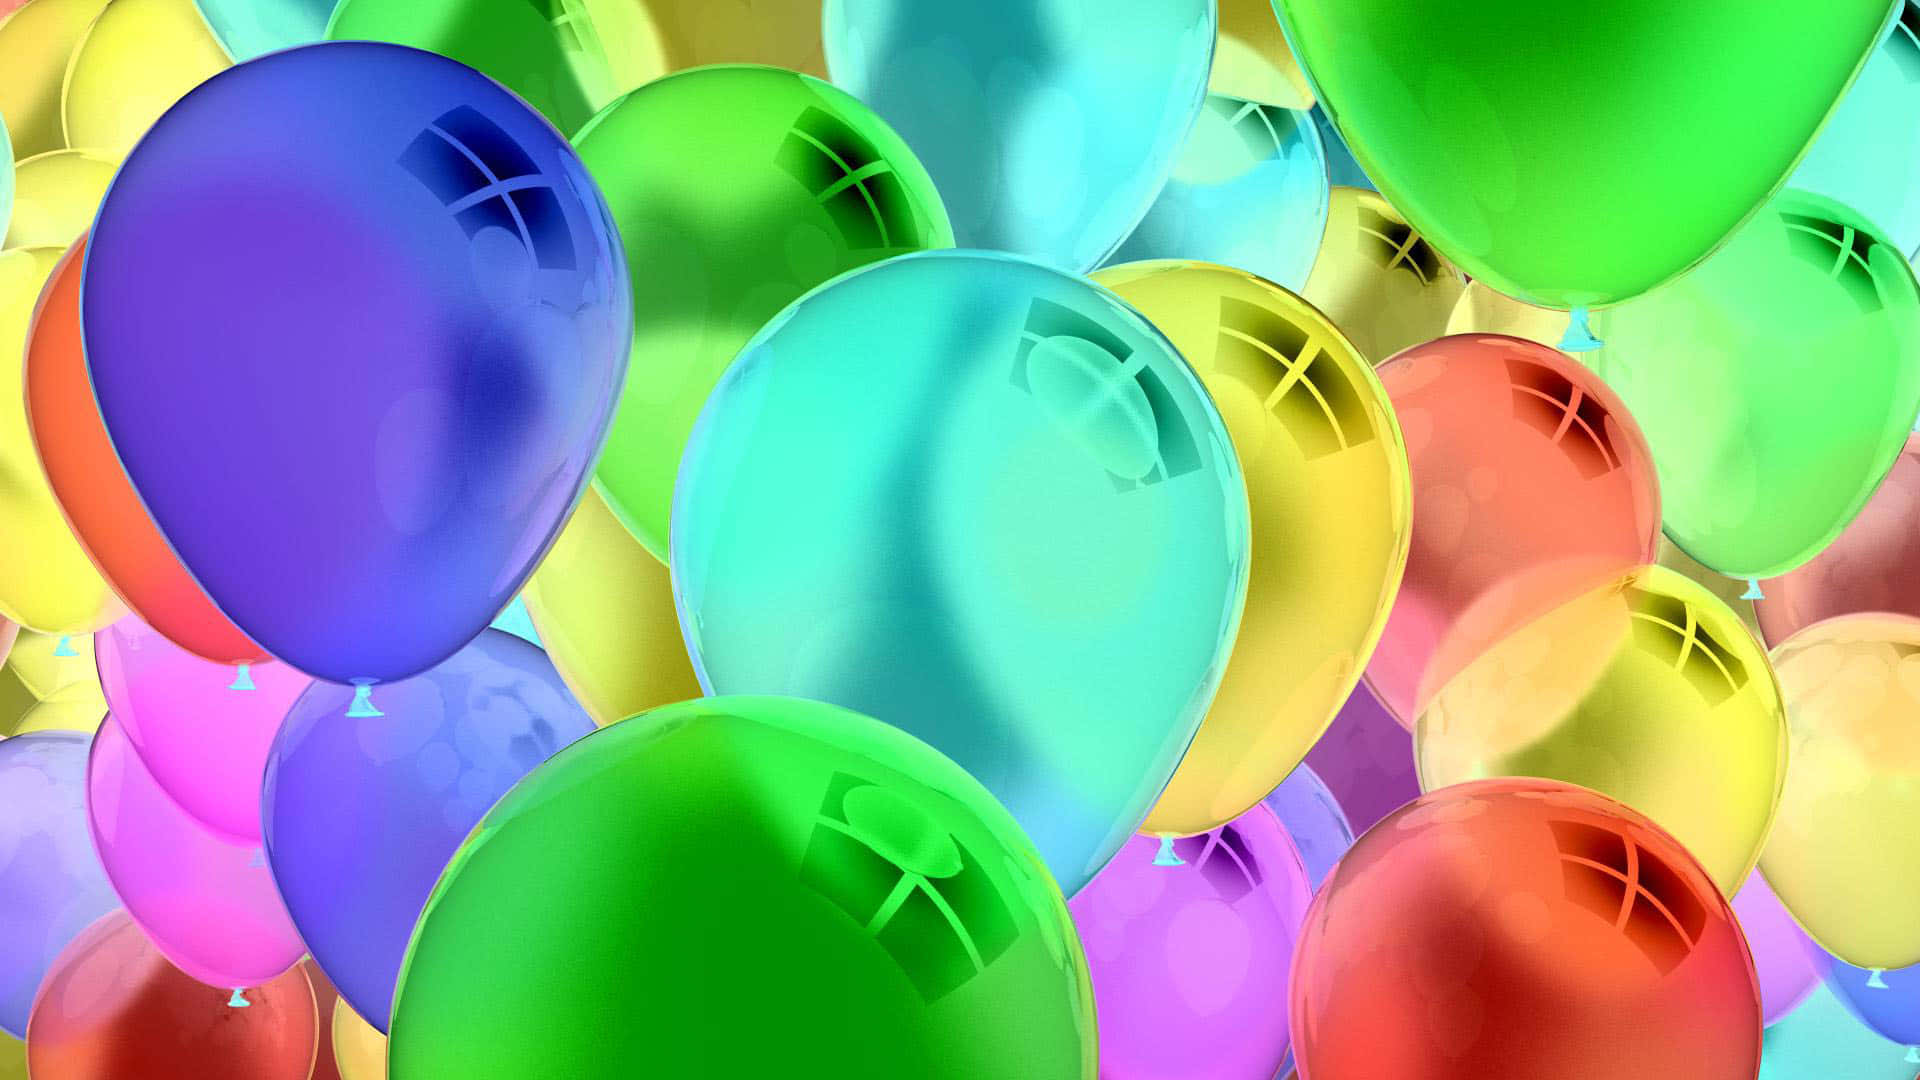 Balõesde Aniversário Imagem Estética Brilhante Para Papel De Parede De Computador Ou Celular.